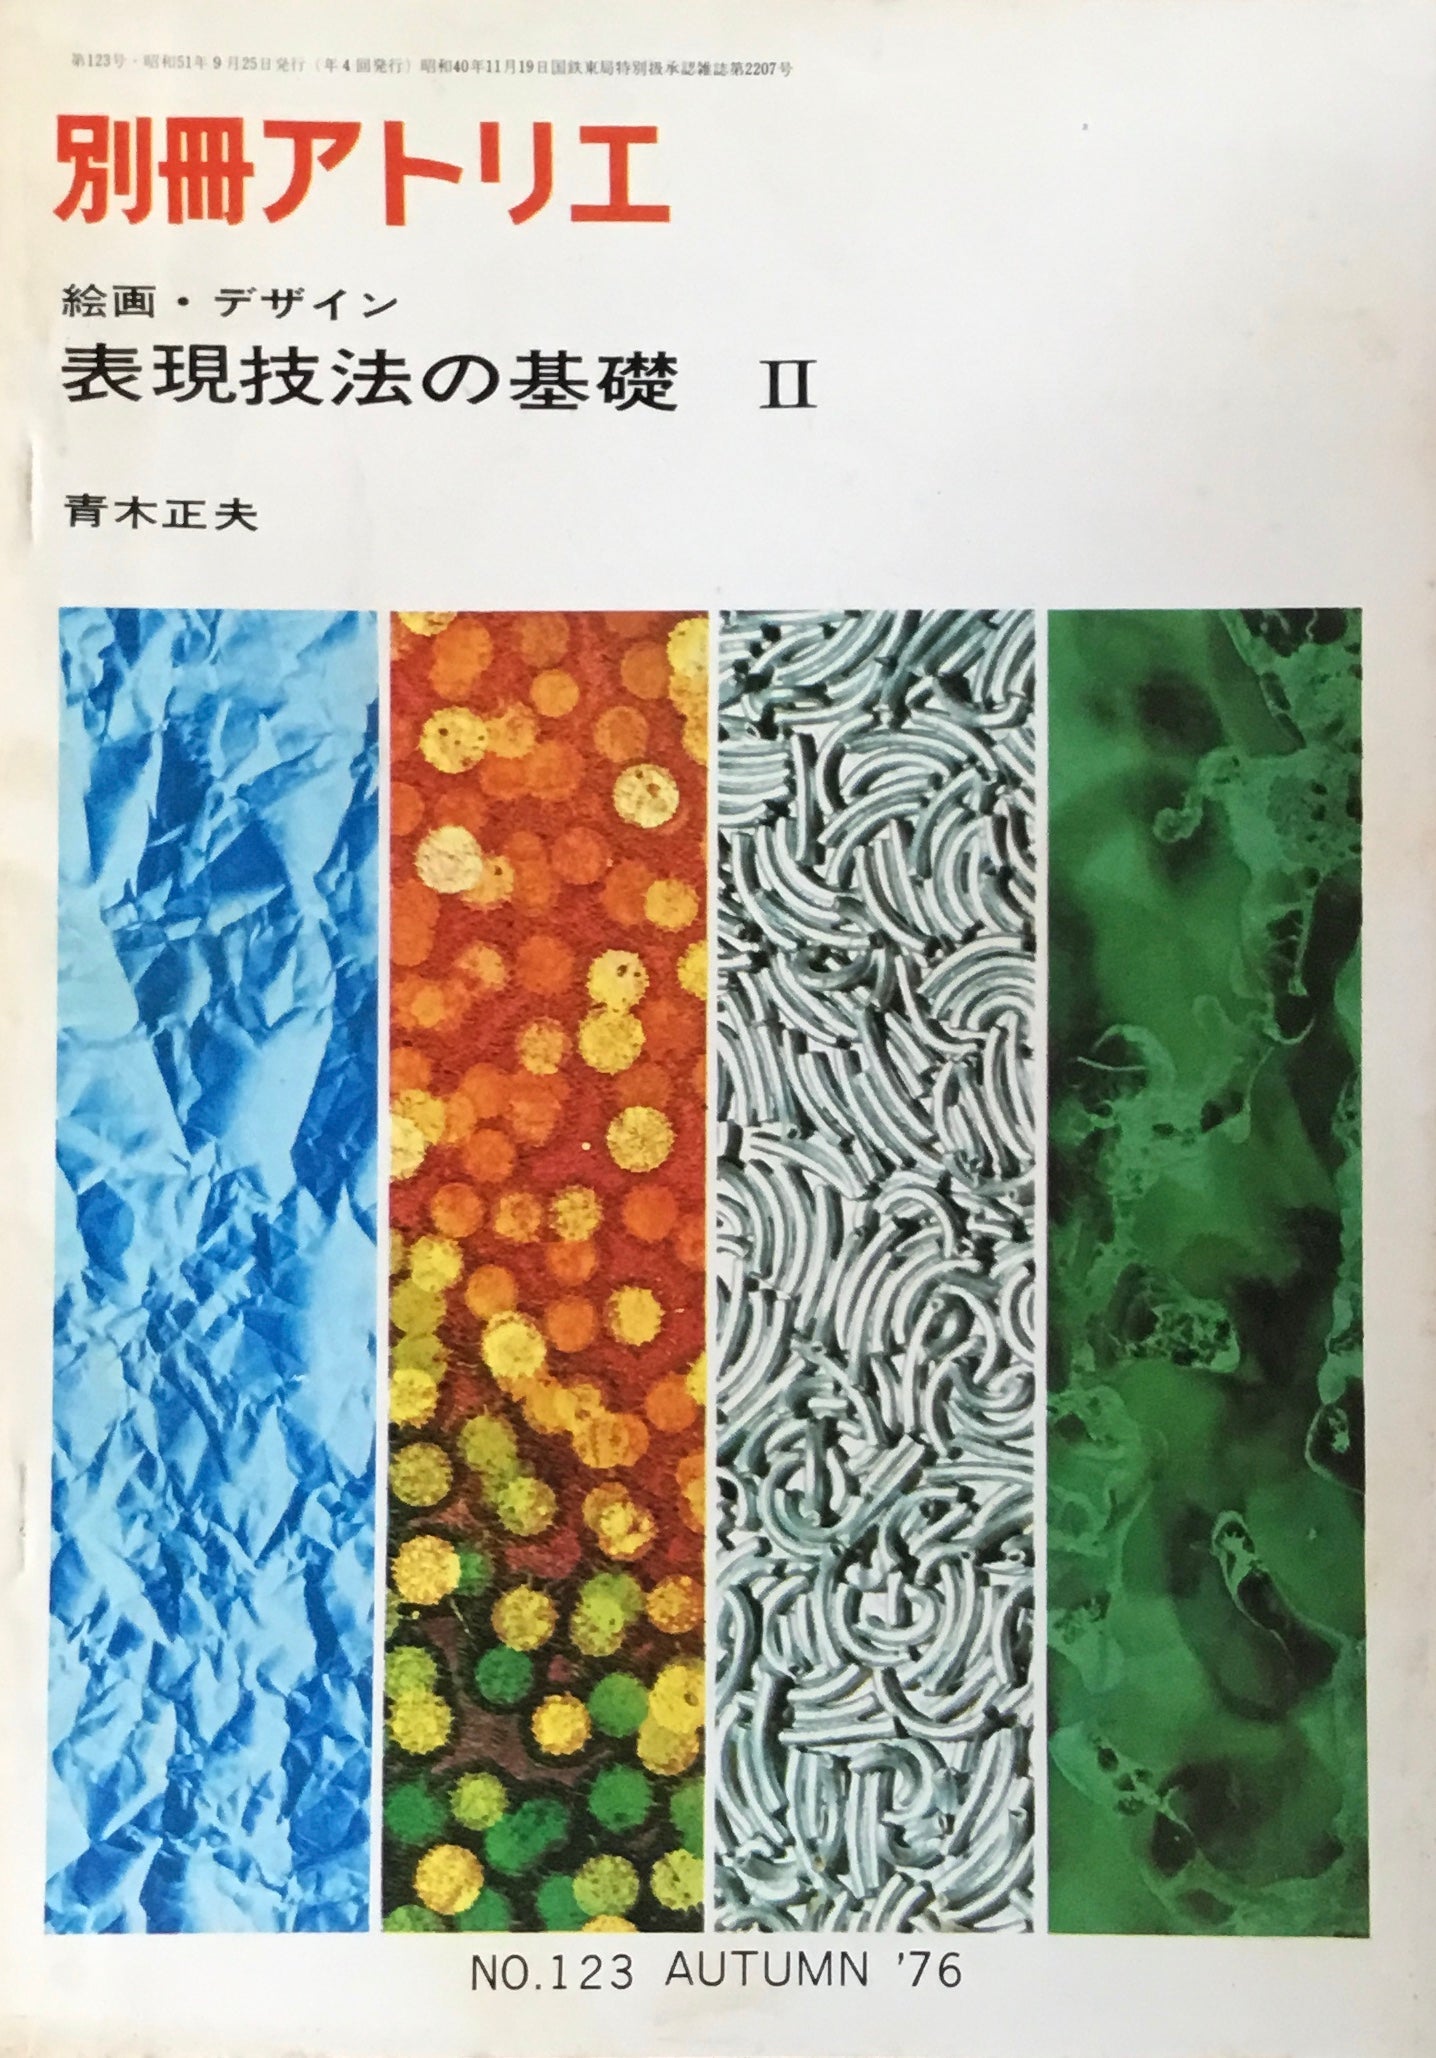 別冊アトリエ 123号 1976年秋 絵画・デザイン 表現技法の基礎Ⅱ 青木